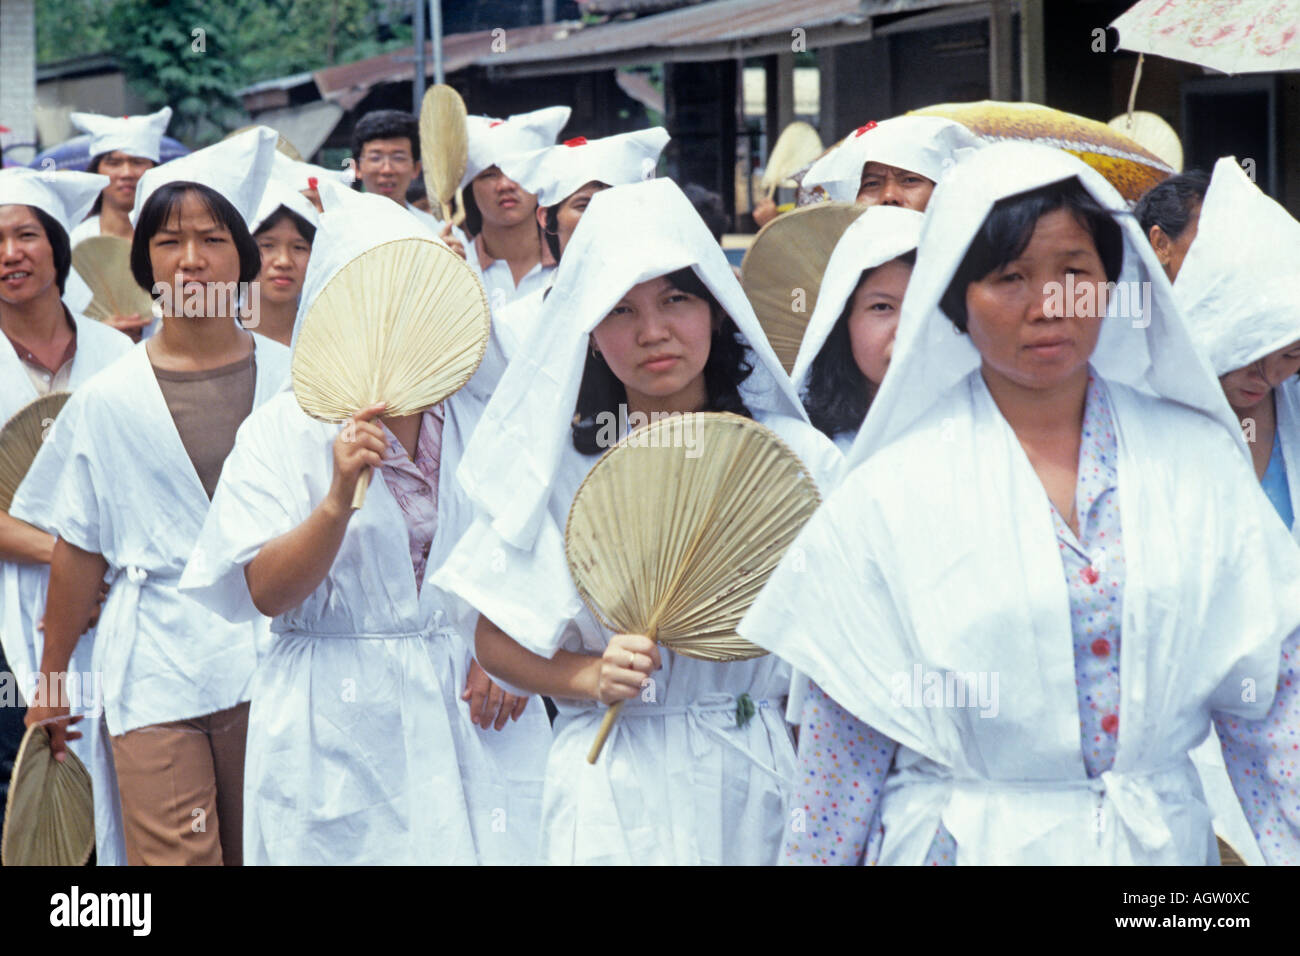 La Malaisie les femmes à un enterrement d'une femme chinoise vénérée. Les femmes sont habillées en blanc. Banque D'Images